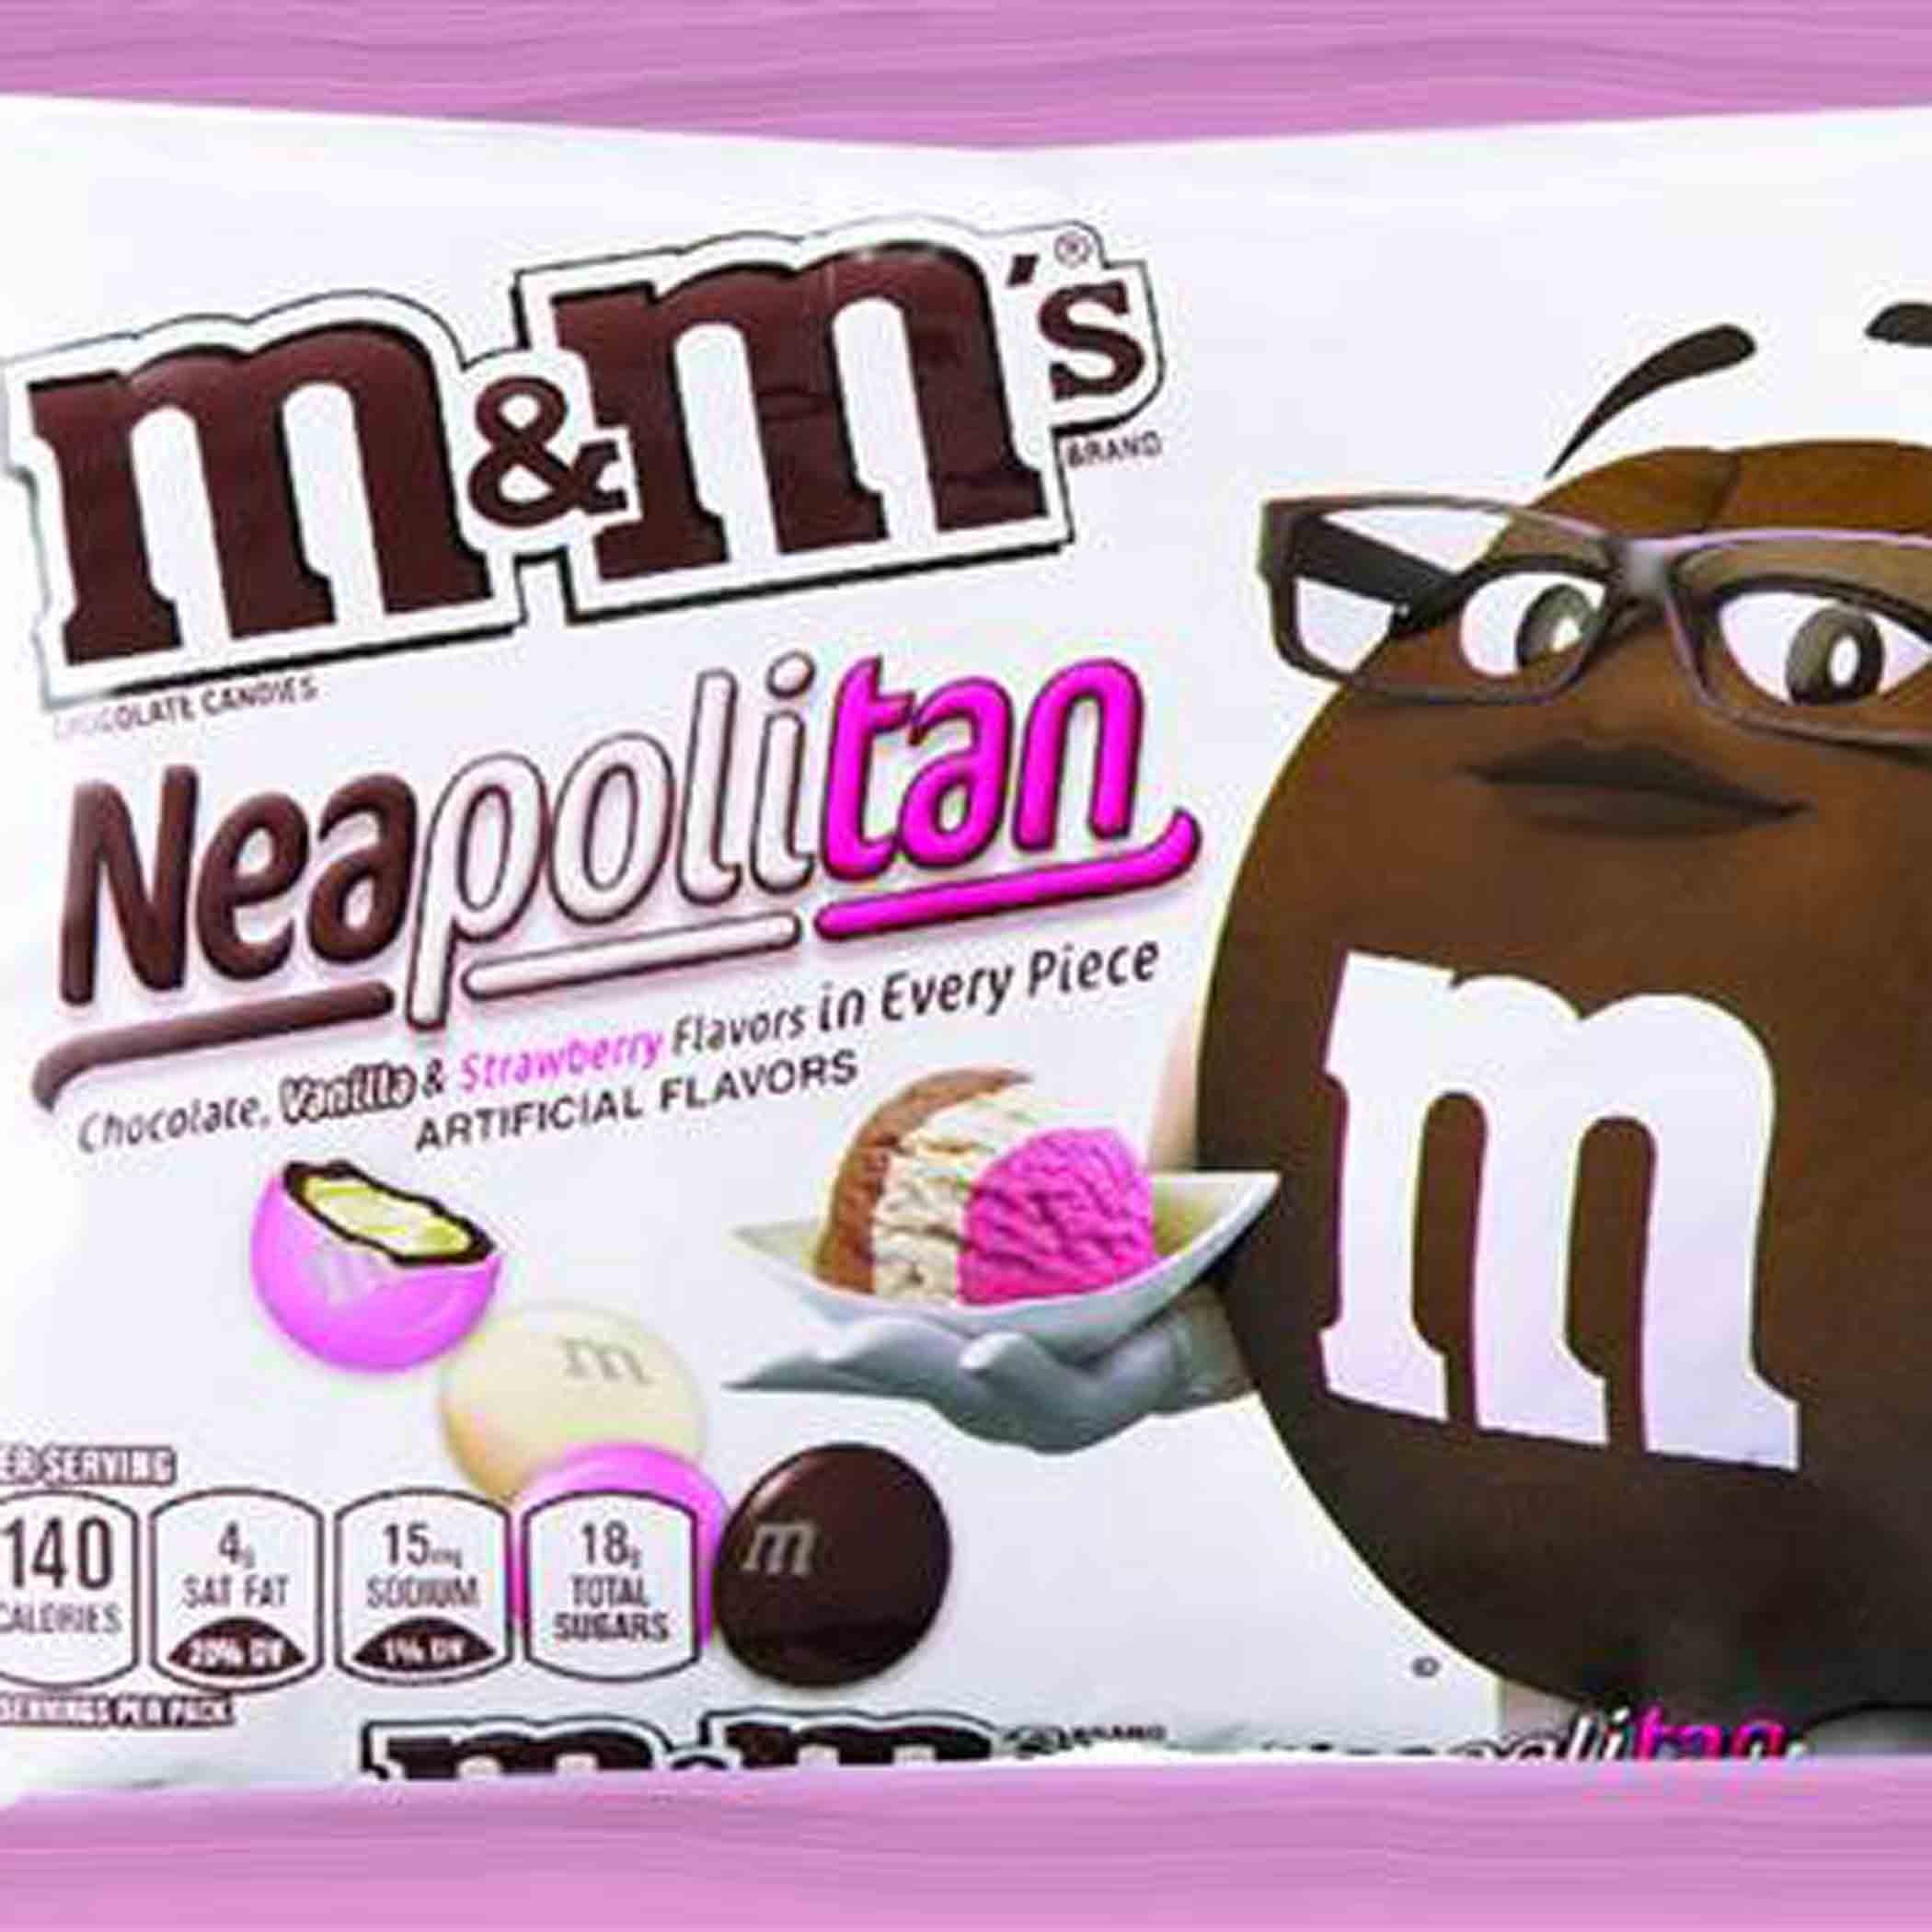 Neapolitan ice cream–flavored M&M's taste test